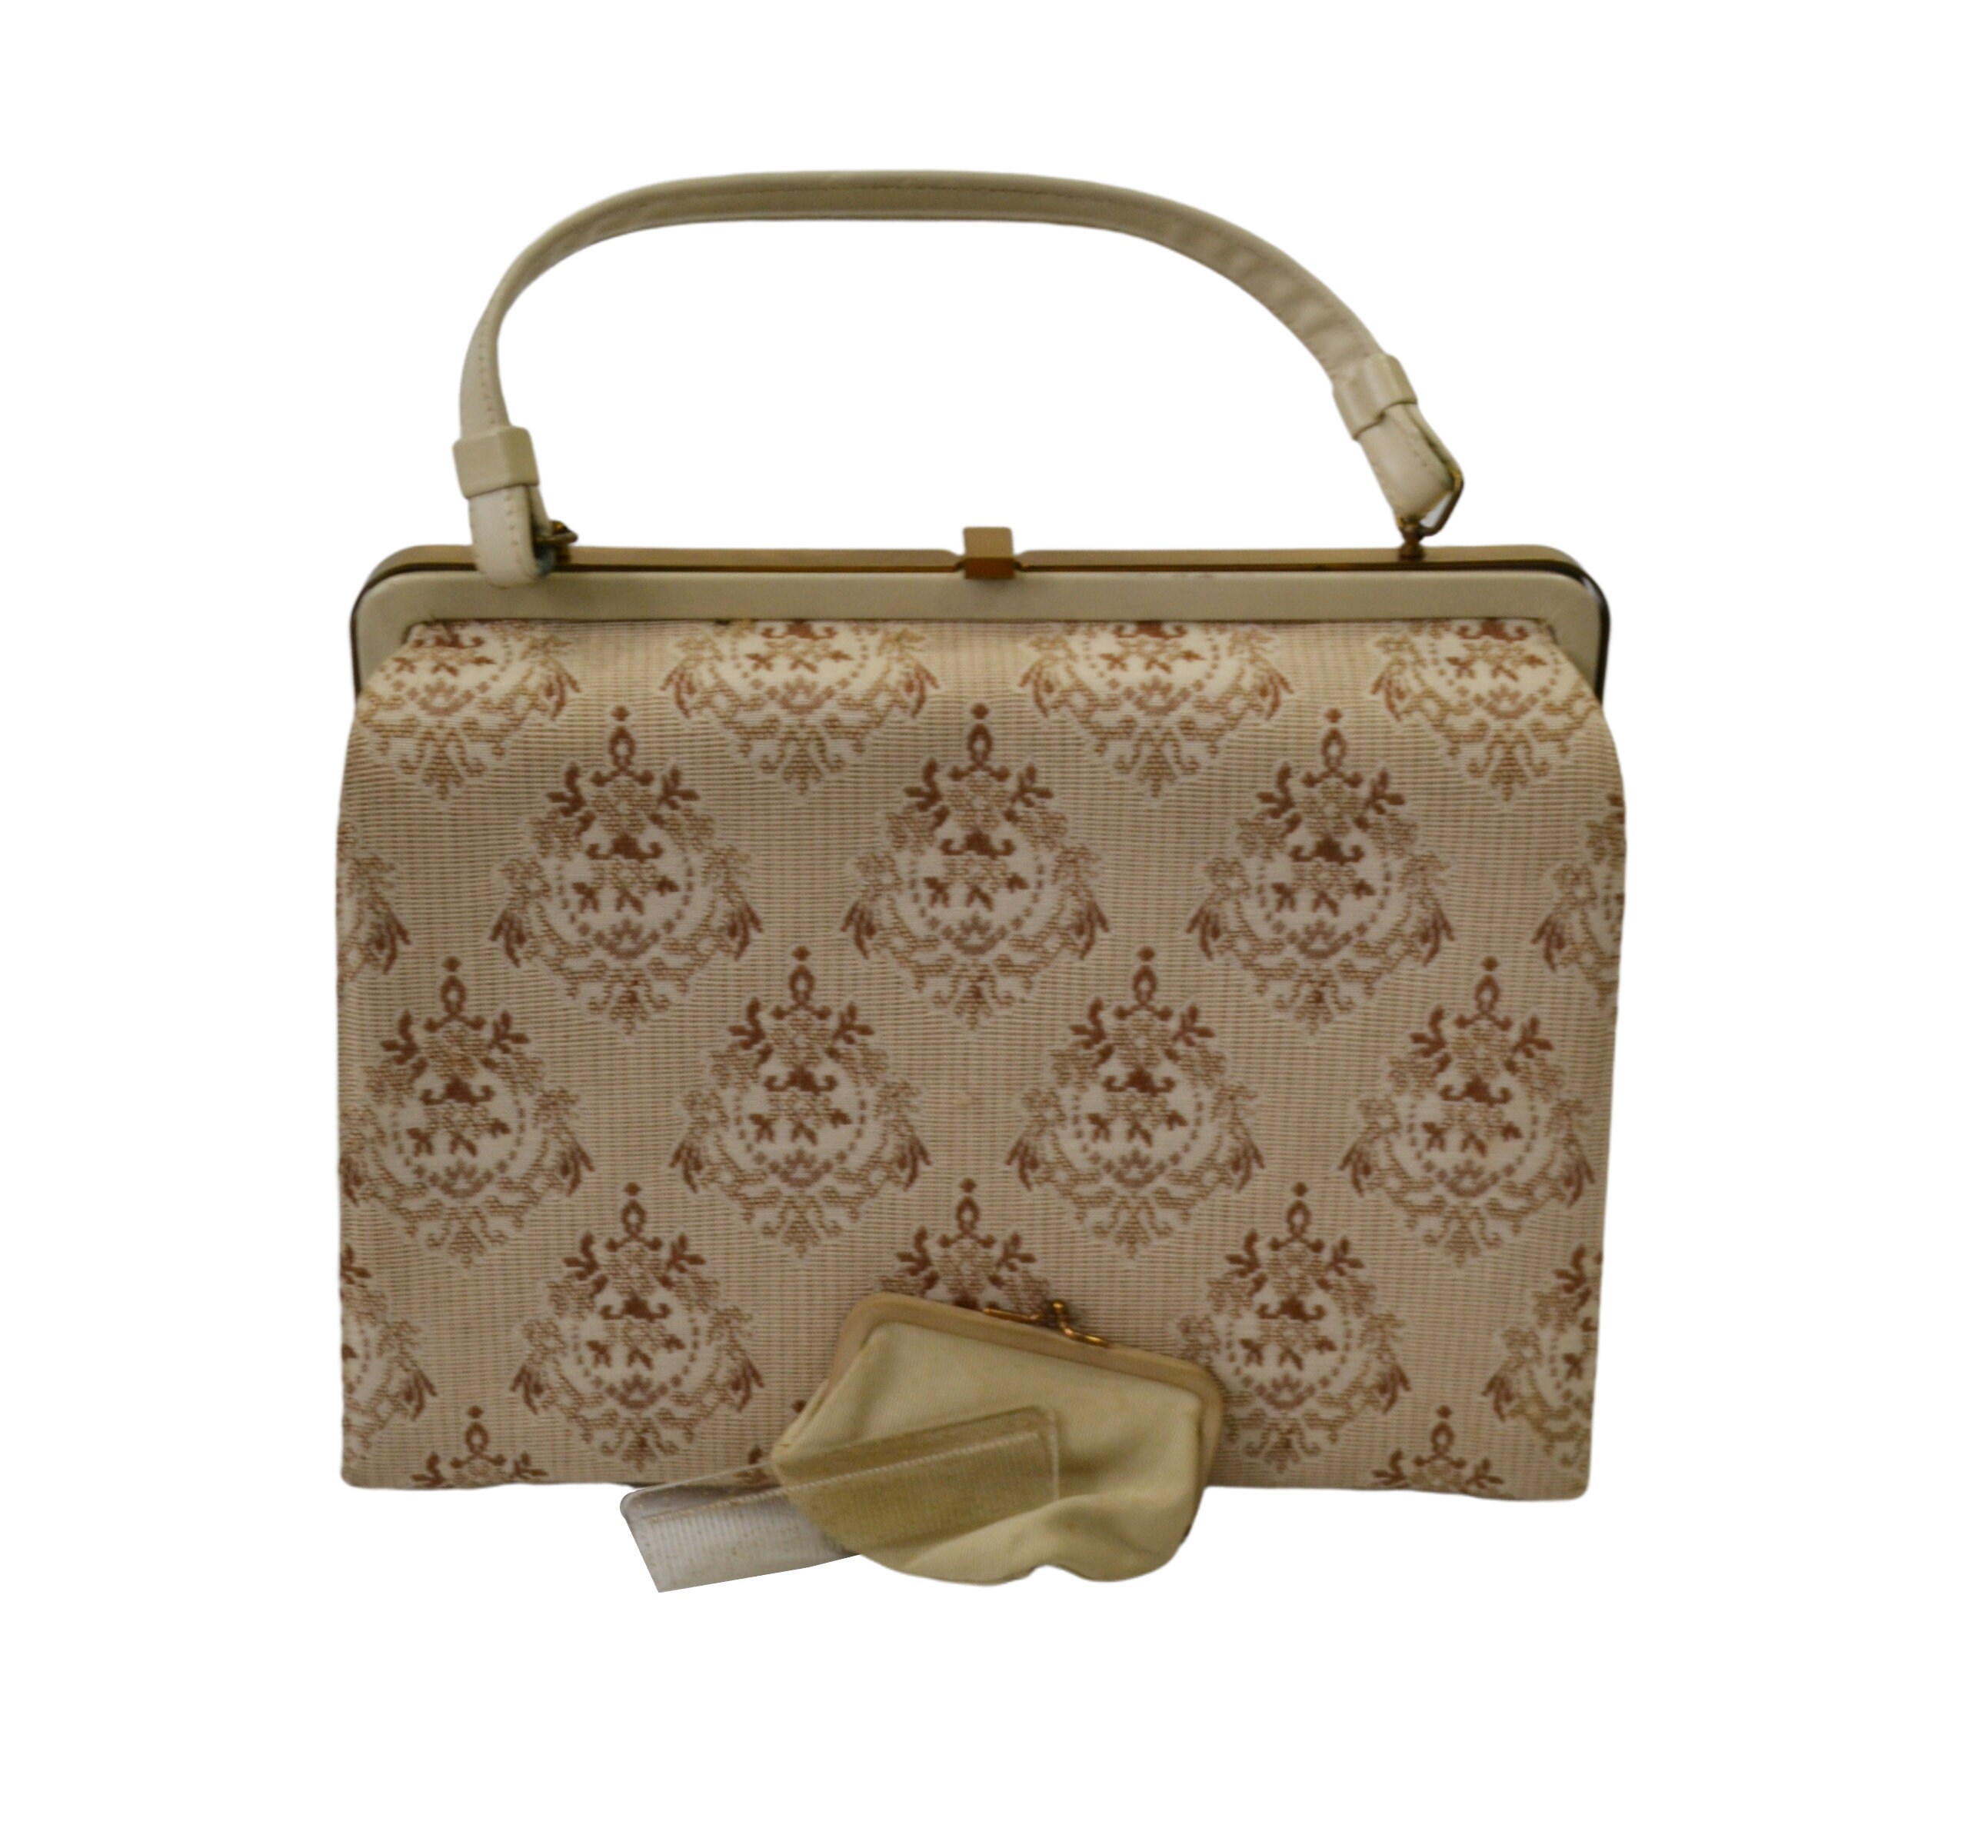 1960s White and Gold Box Handbag by Delill Make up Bag 